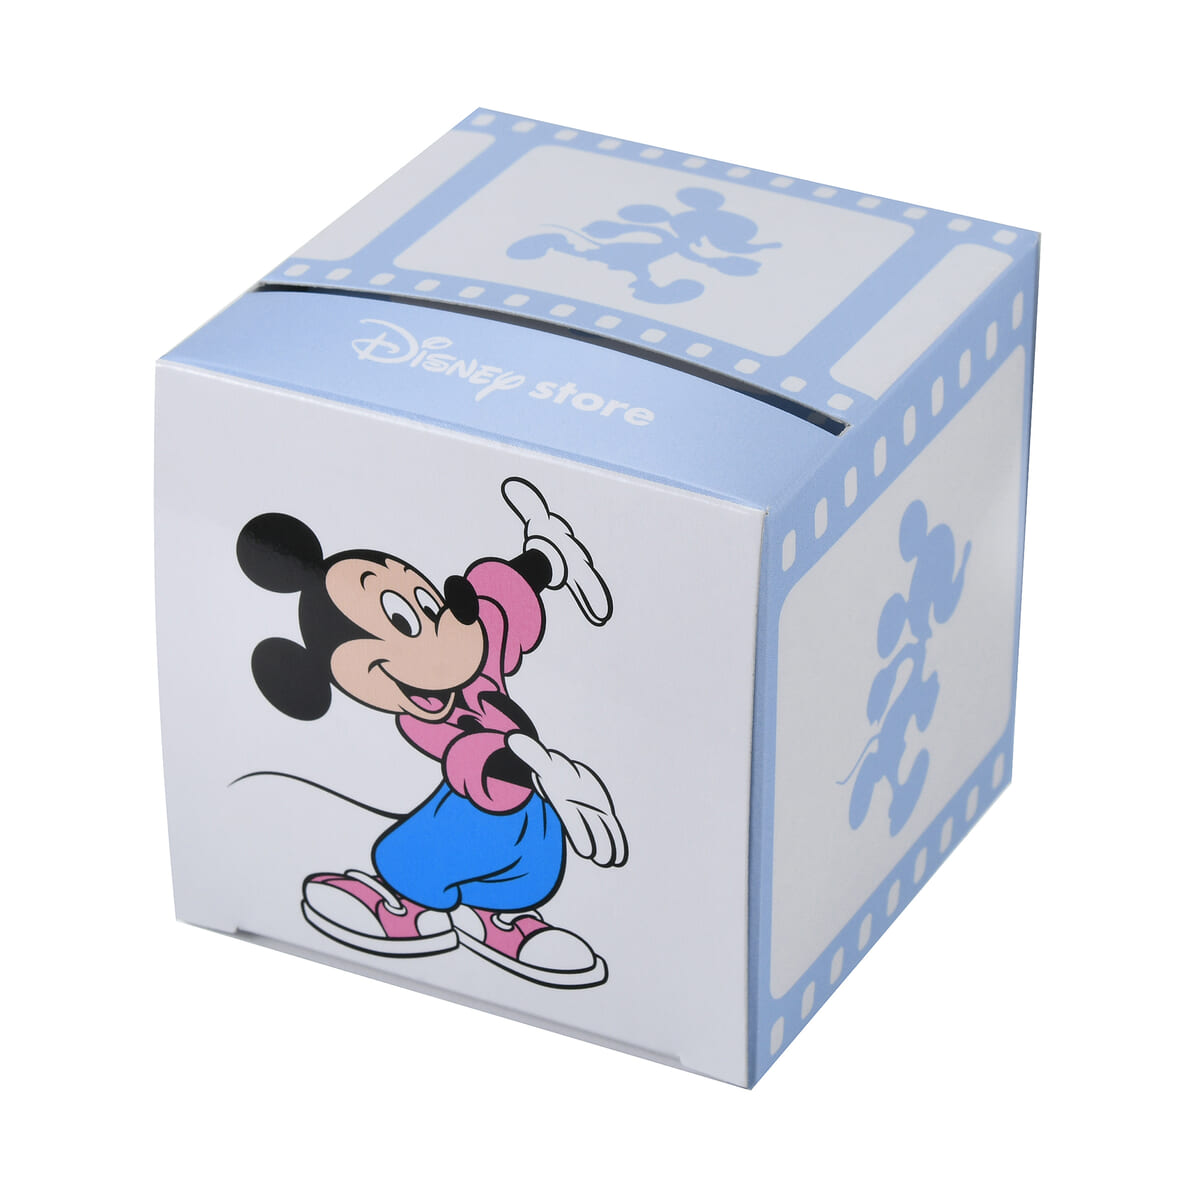 ミッキー メモ帳 ロール ボックス入り Disney Store Japan 30TH Running02